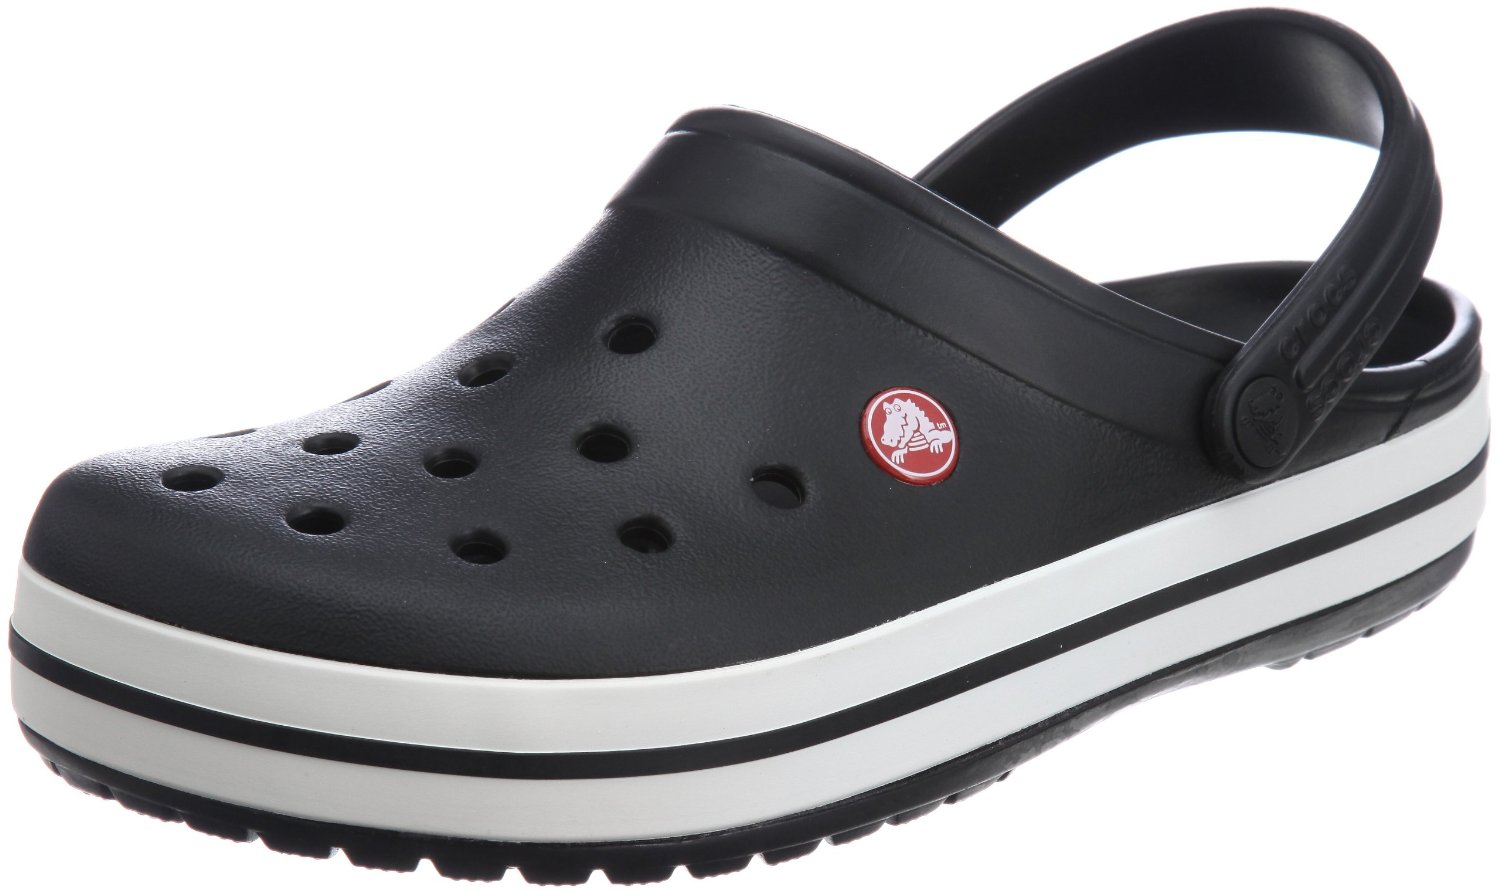  Crocs  Shoes Crocs  Men s  Crocband Clog